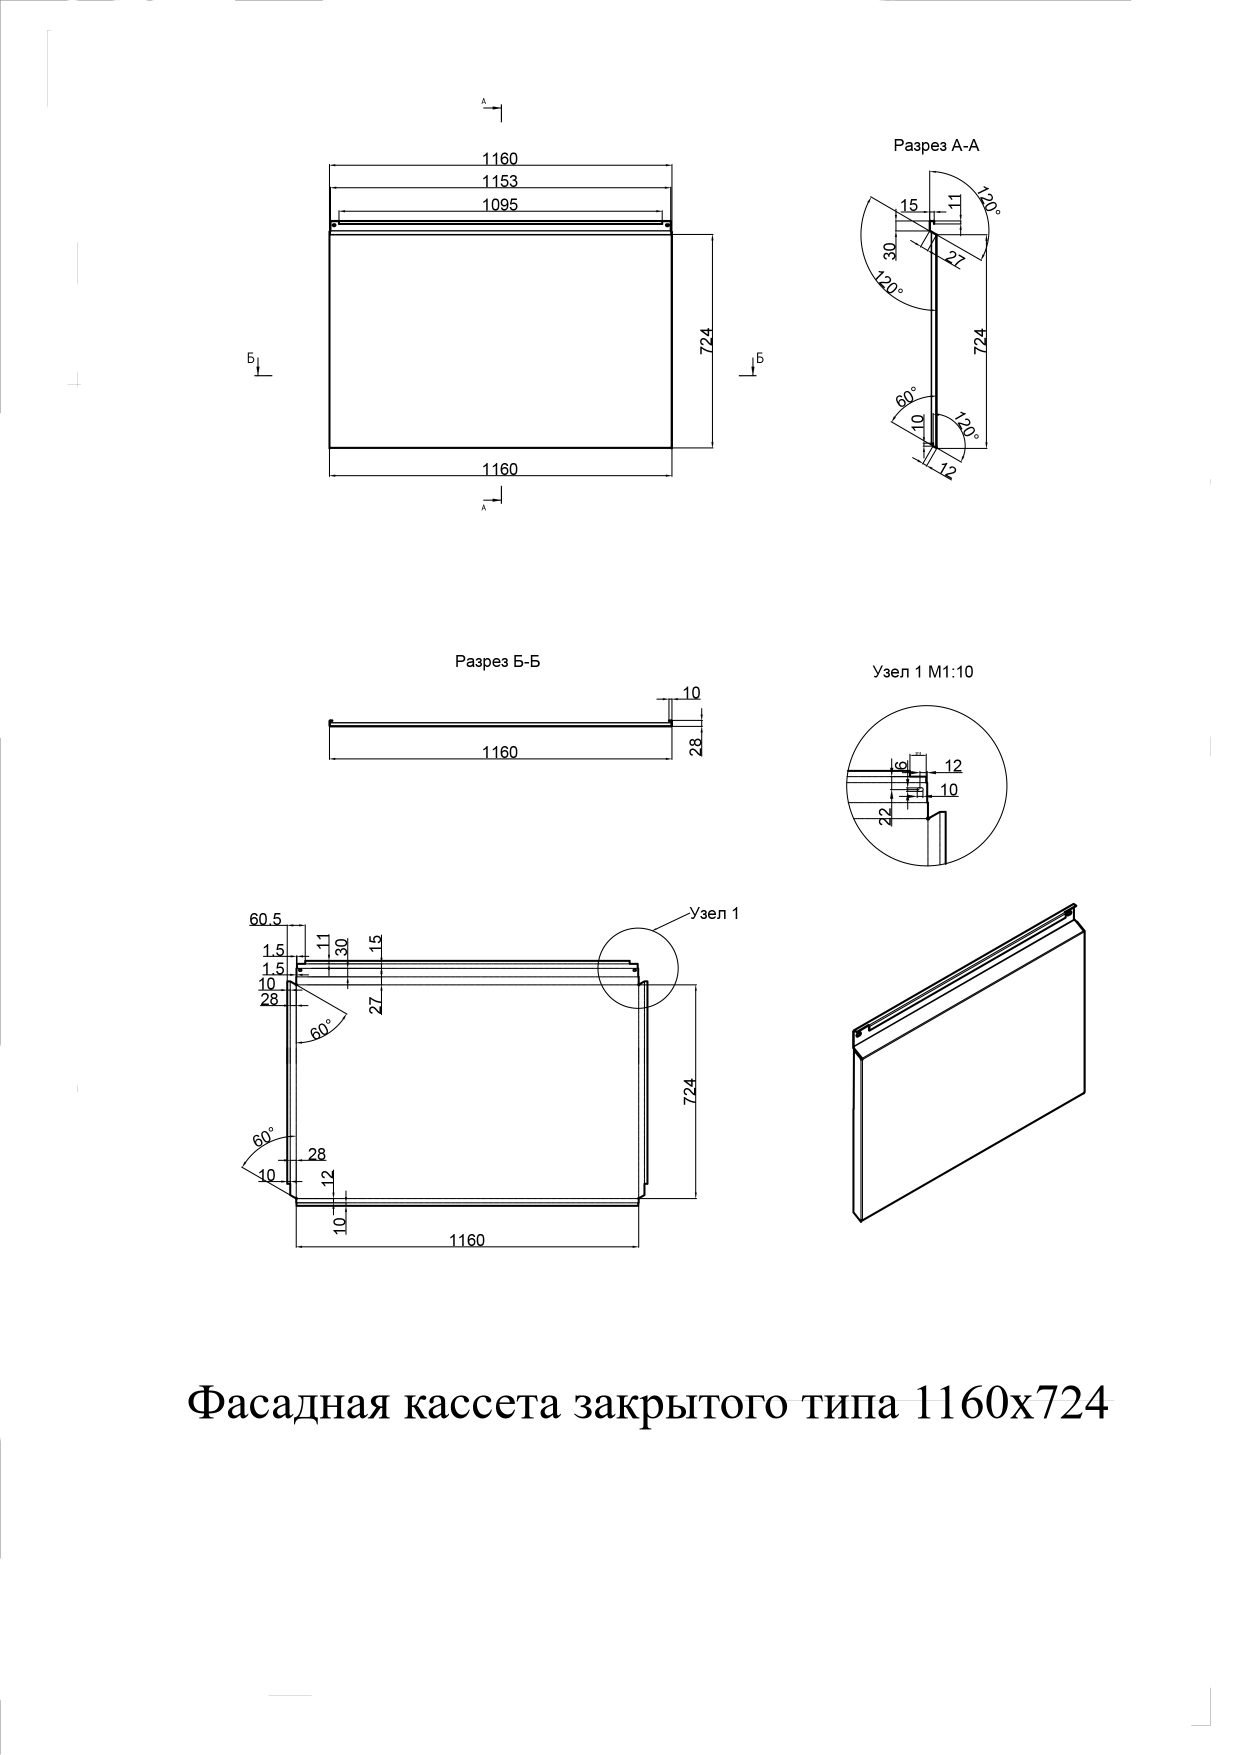 Фасадные кассеты закрытого типа из оцинкованной стали с полимерным покрытием 1160х724, 0,7 мм - чертеж